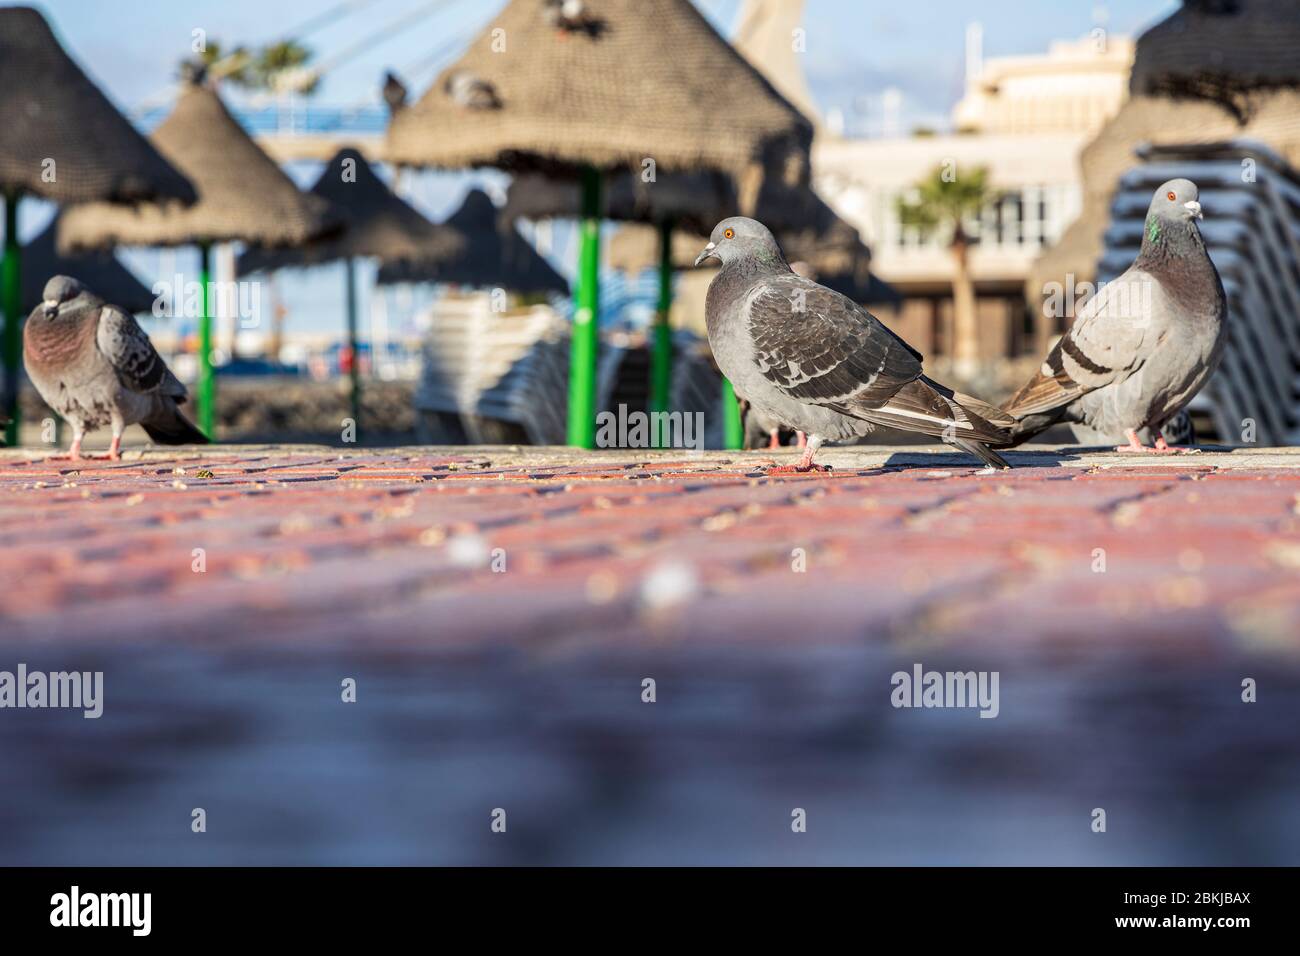 Tauben auf der Promenade am Playa la Pinta während der Zusammensperrung 19 im touristischen Ferienort Costa Adeje, Teneriffa, Kanarische Inseln, Spanien Stockfoto